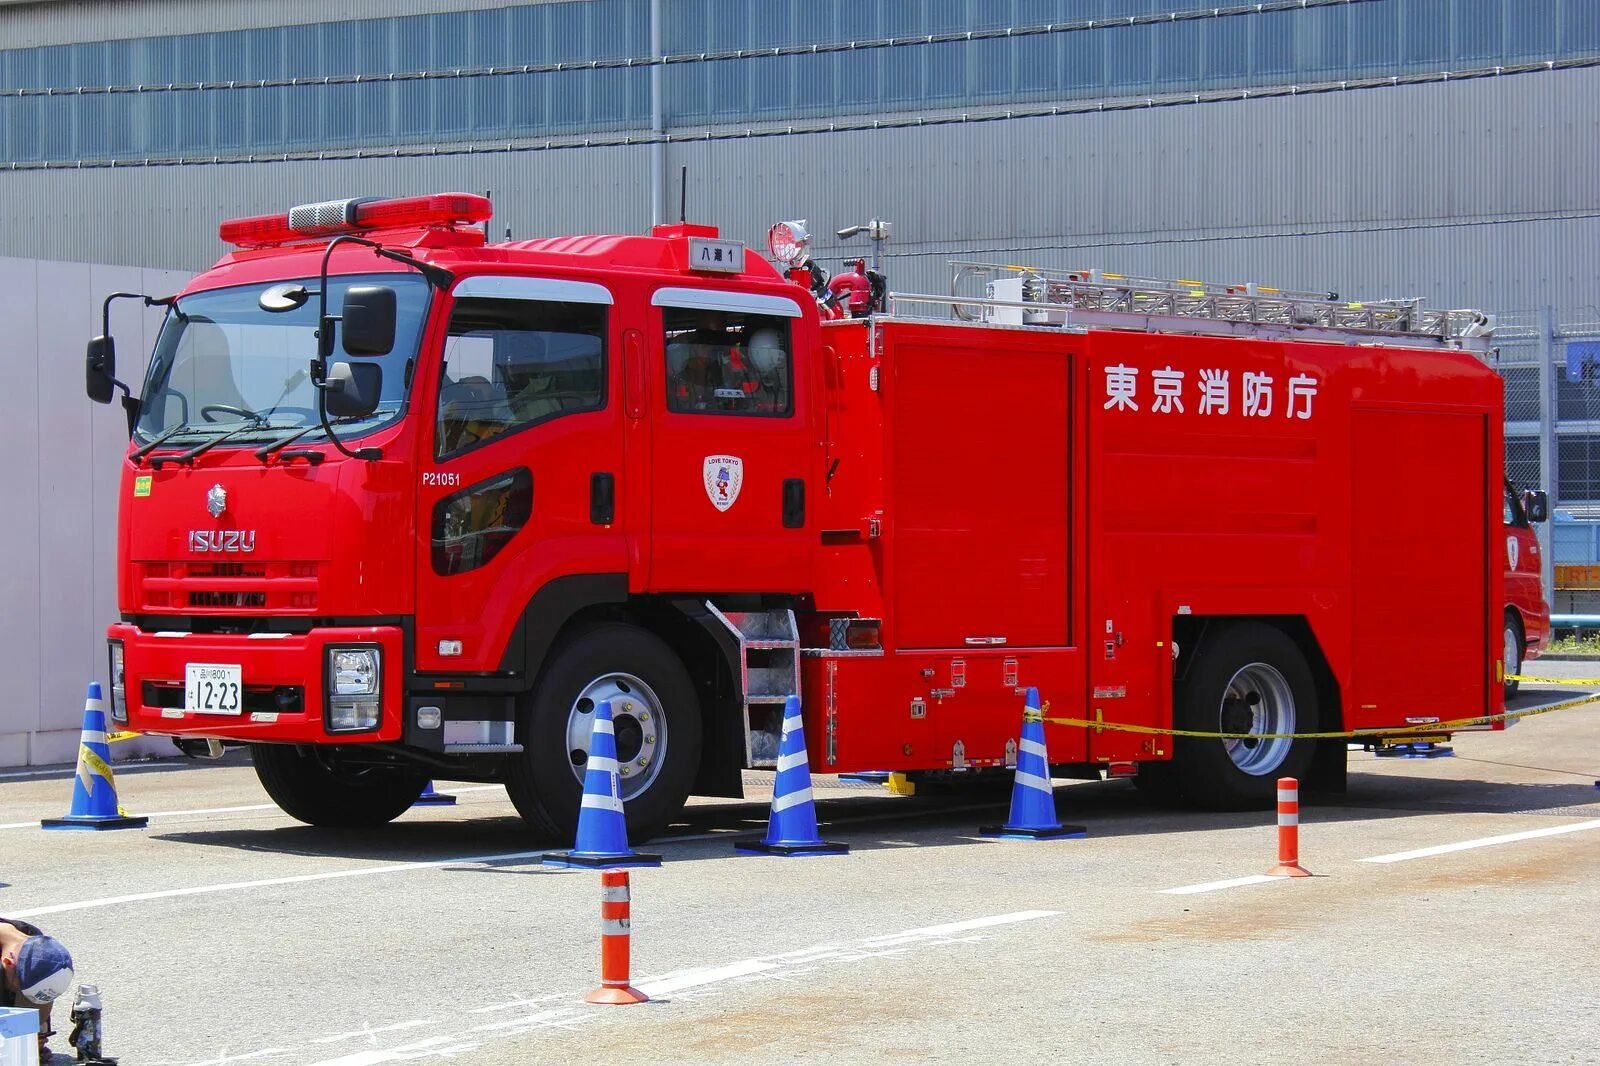 АПС пожарная машина. АПС пожарный автомобиль. Пожарная машина Исузу. Пожарная машинка (20 см) Fire-Fighting vehicle bp738.